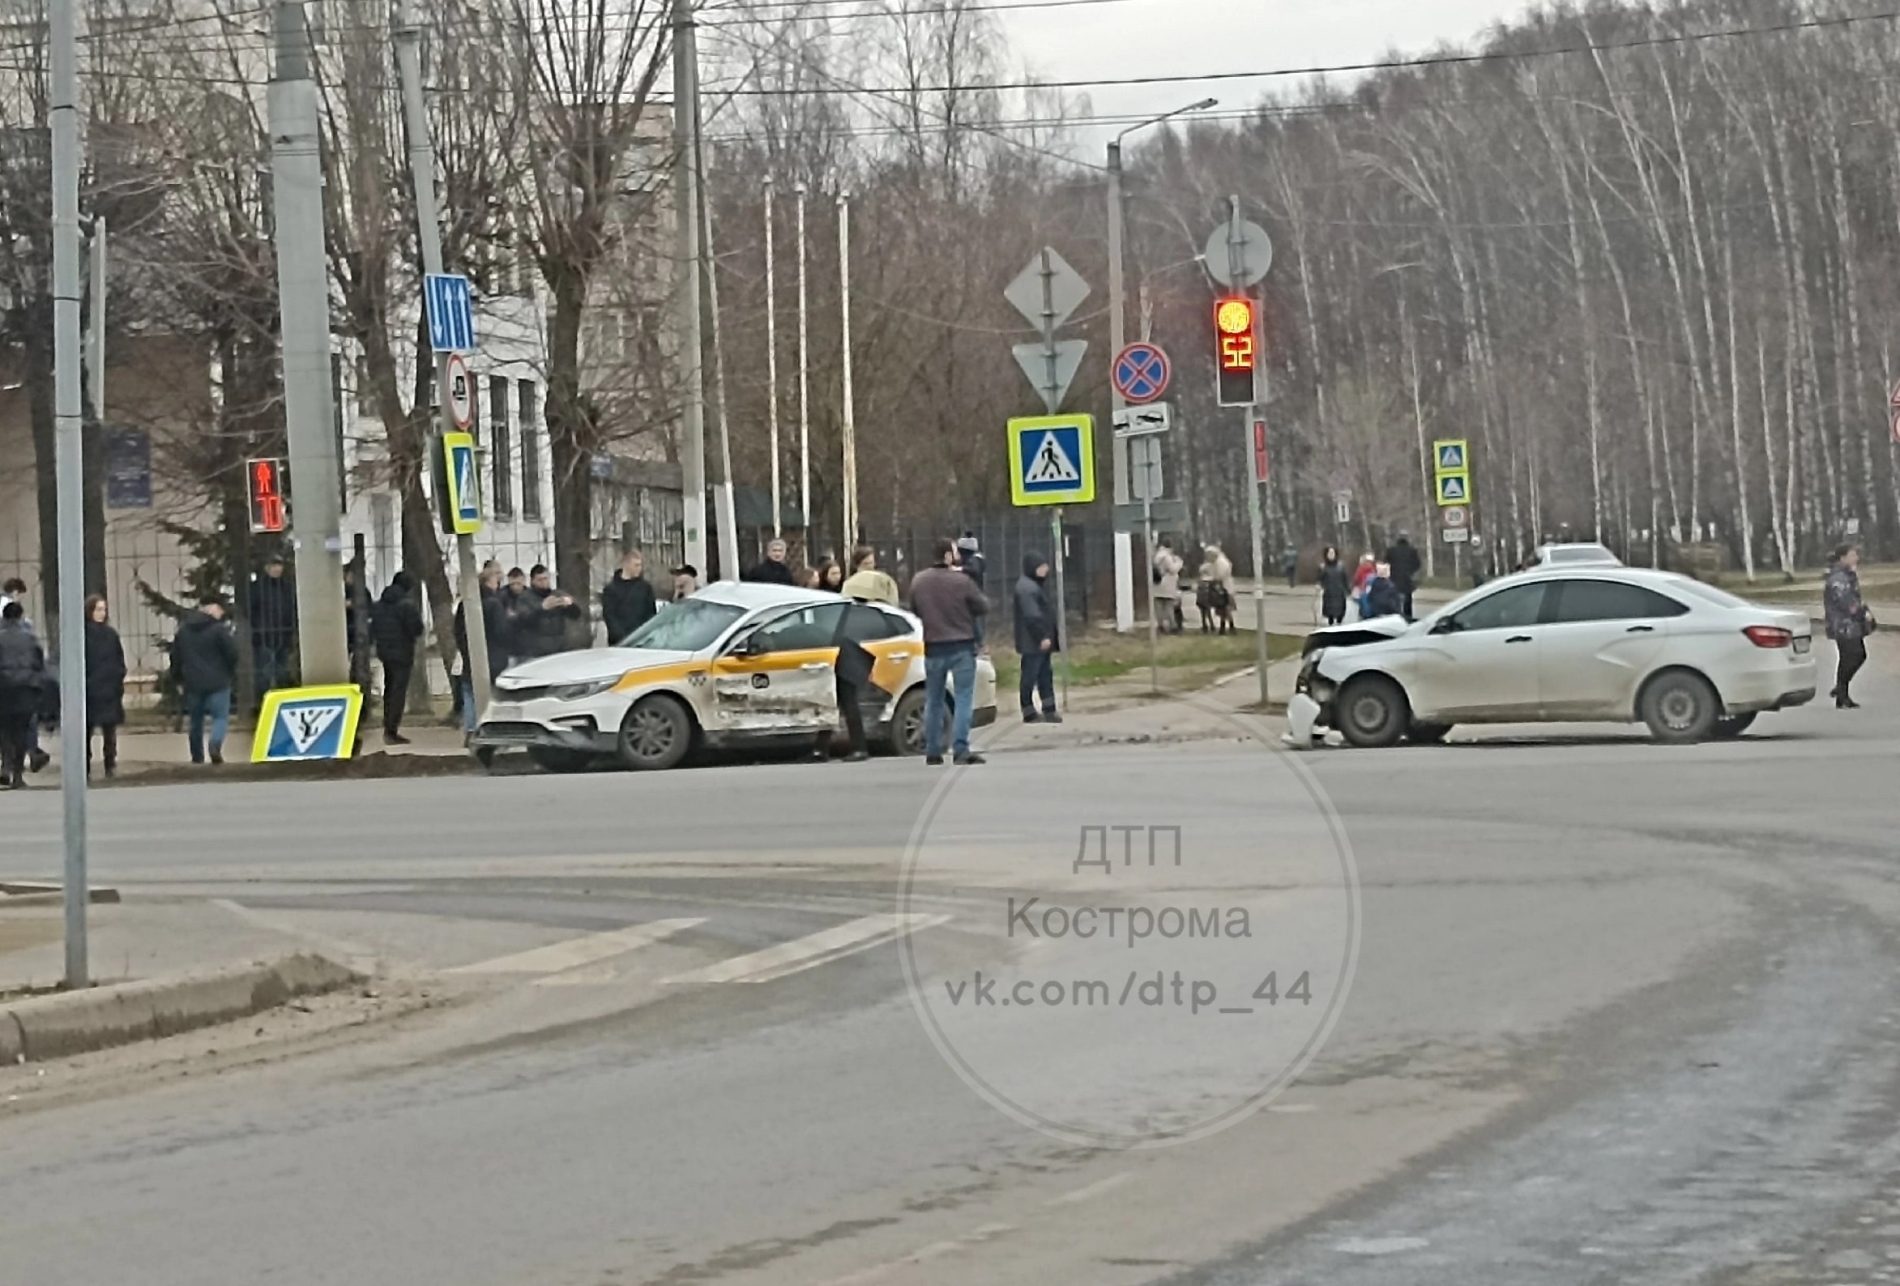 В Костроме попал в жёсткое ДТП автомобиль «Яндекс.Такси»